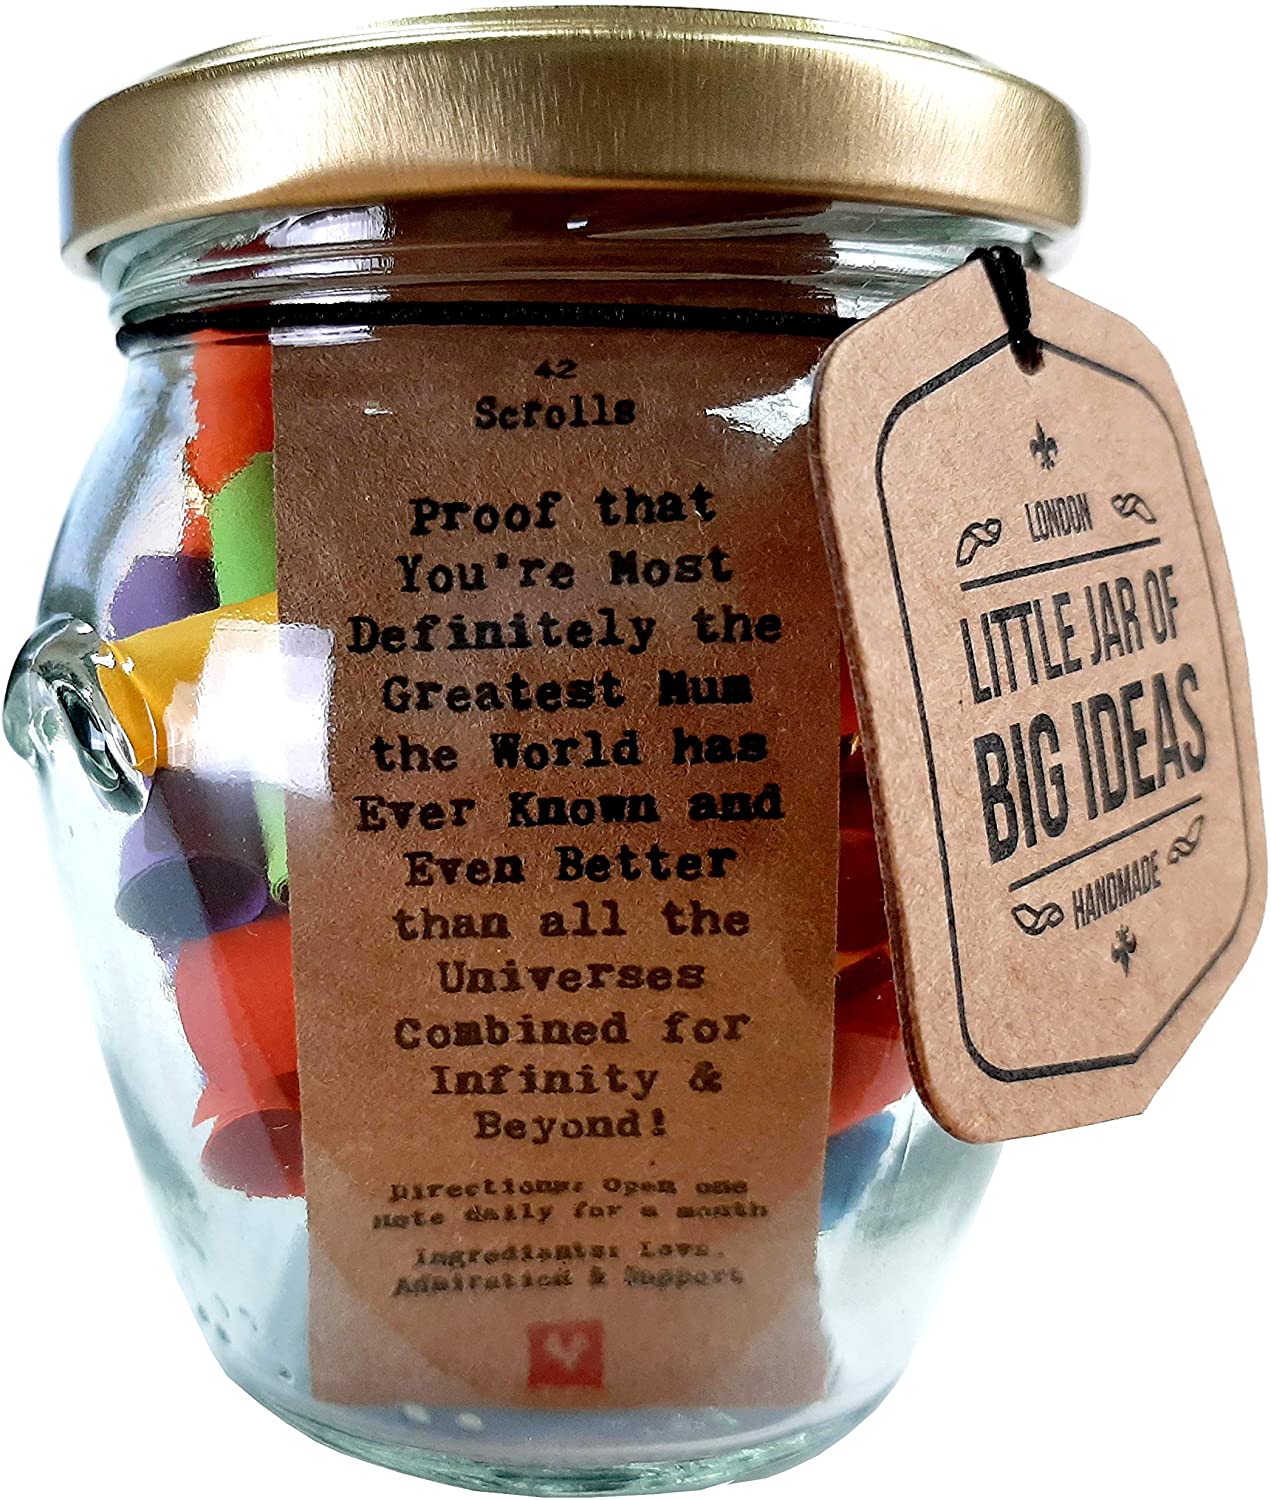  Thoughtful Gift   artigianale artigianalmente regalo  Unique  Little Jar of Big Ideas Piccolo vaso di grandi grazie  